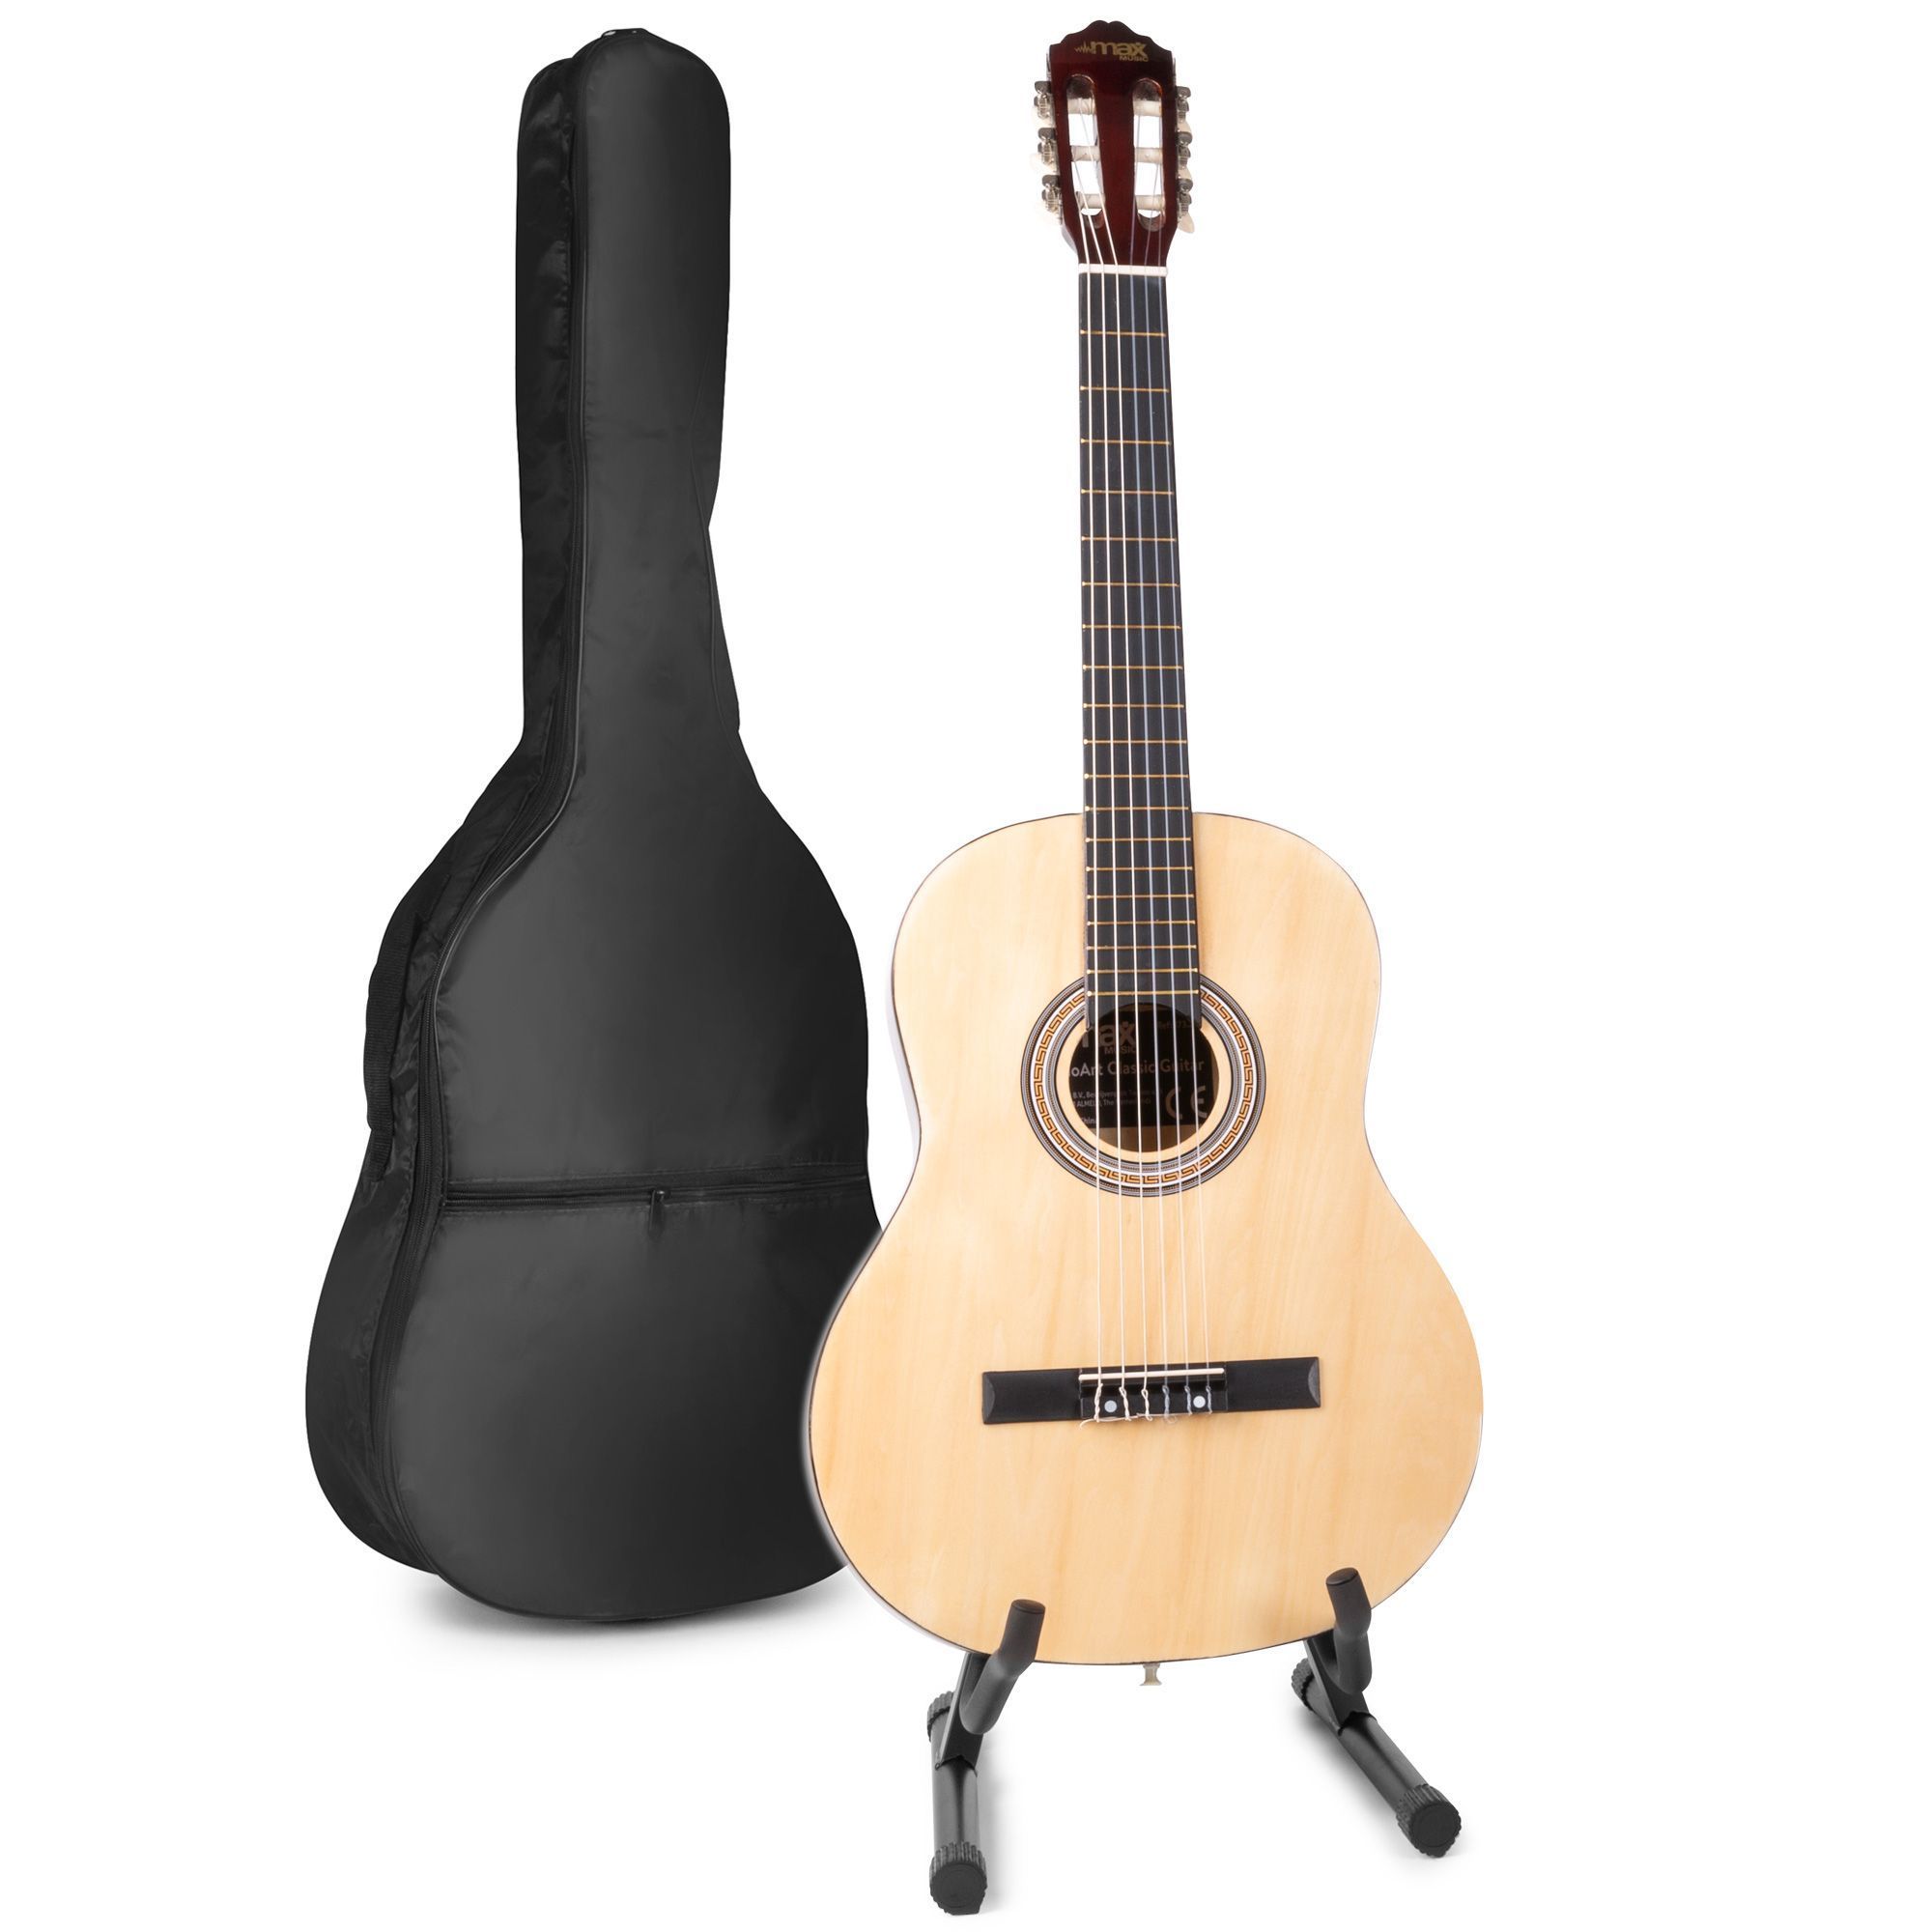 Akoestische gitaar voor beginners - MAX SoloArt klassieke gitaar / Spaanse gitaar met o.a. 39'' gitaar, gitaar standaard, gitaartas, gitaar stemapparaat en extra accessoires - Hout